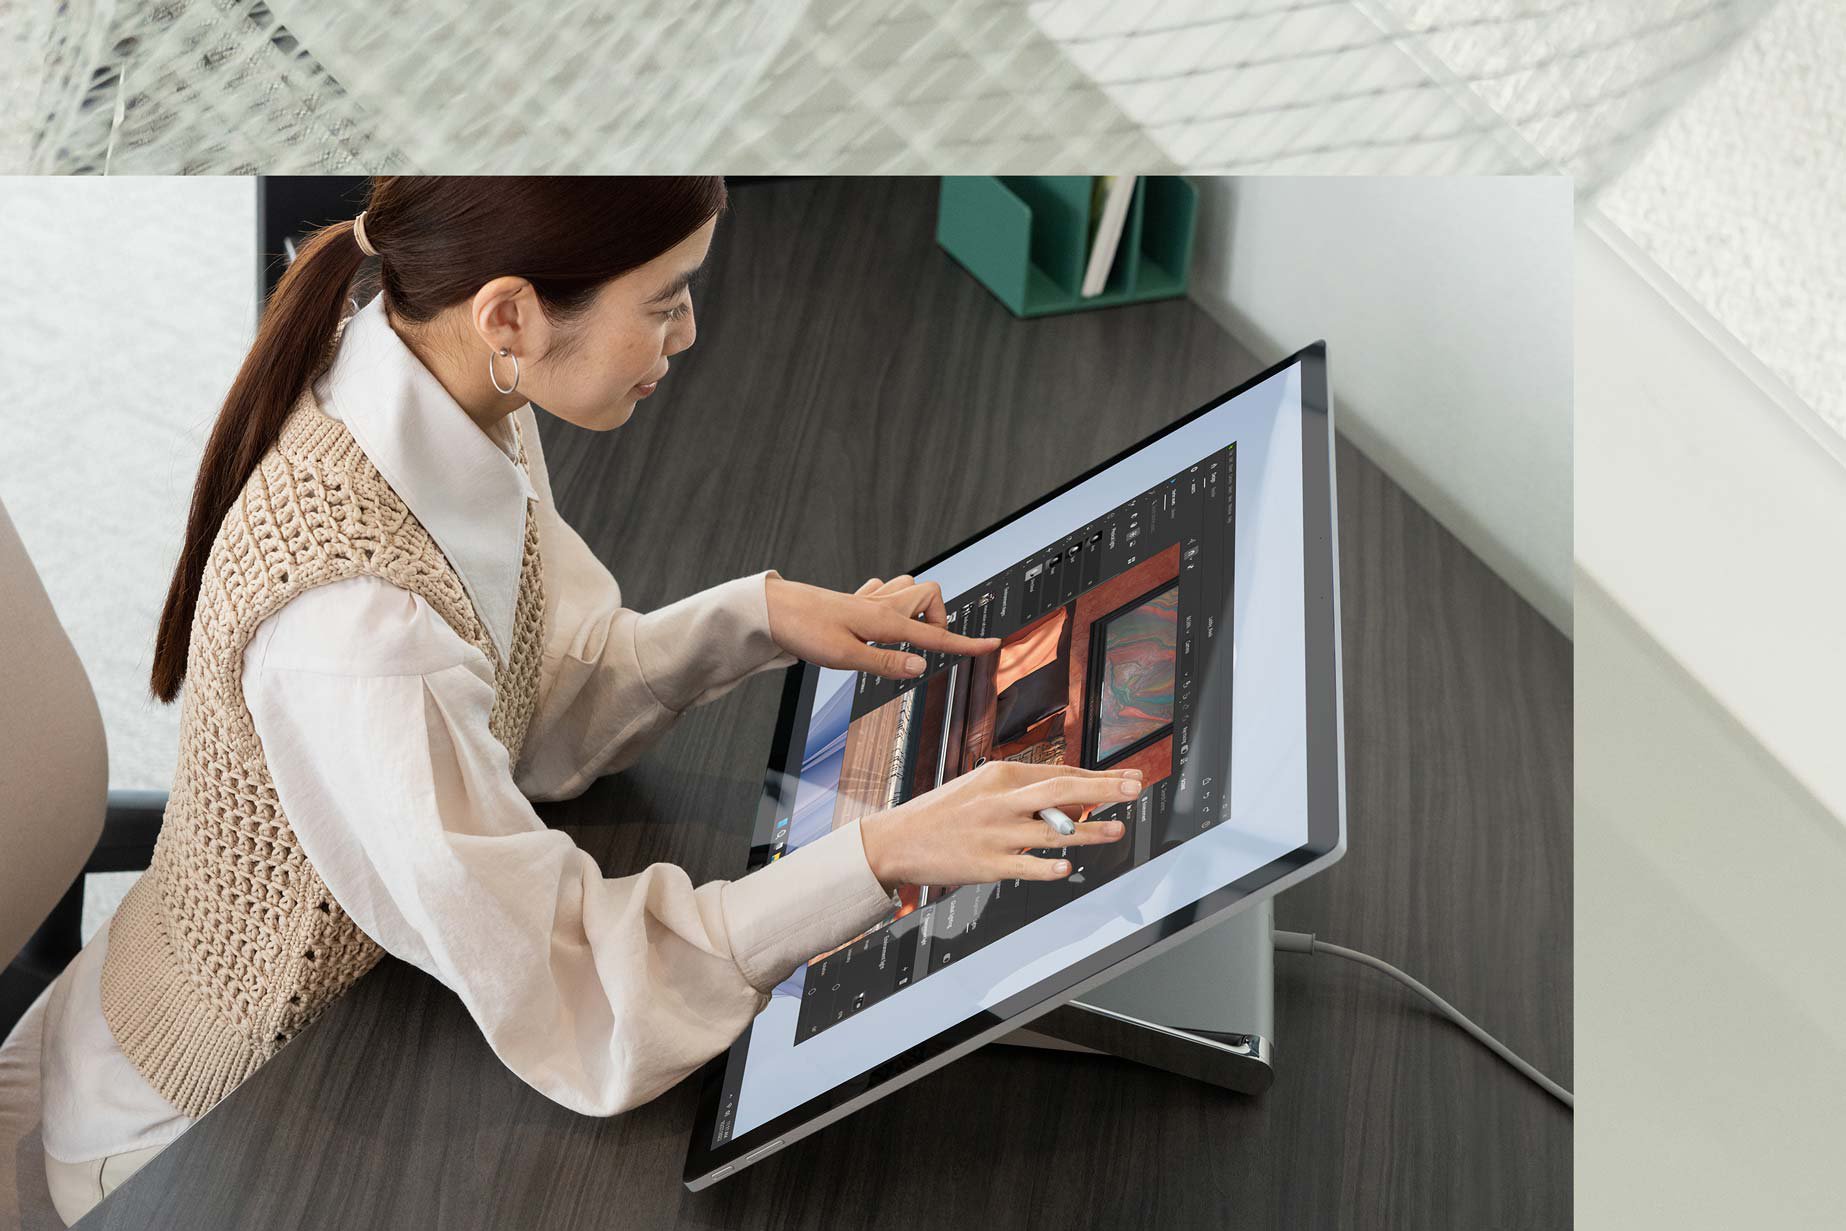 En person bruker to hender til å fullføre oppgaver på kontoret og berører en Surface Studio 2+.